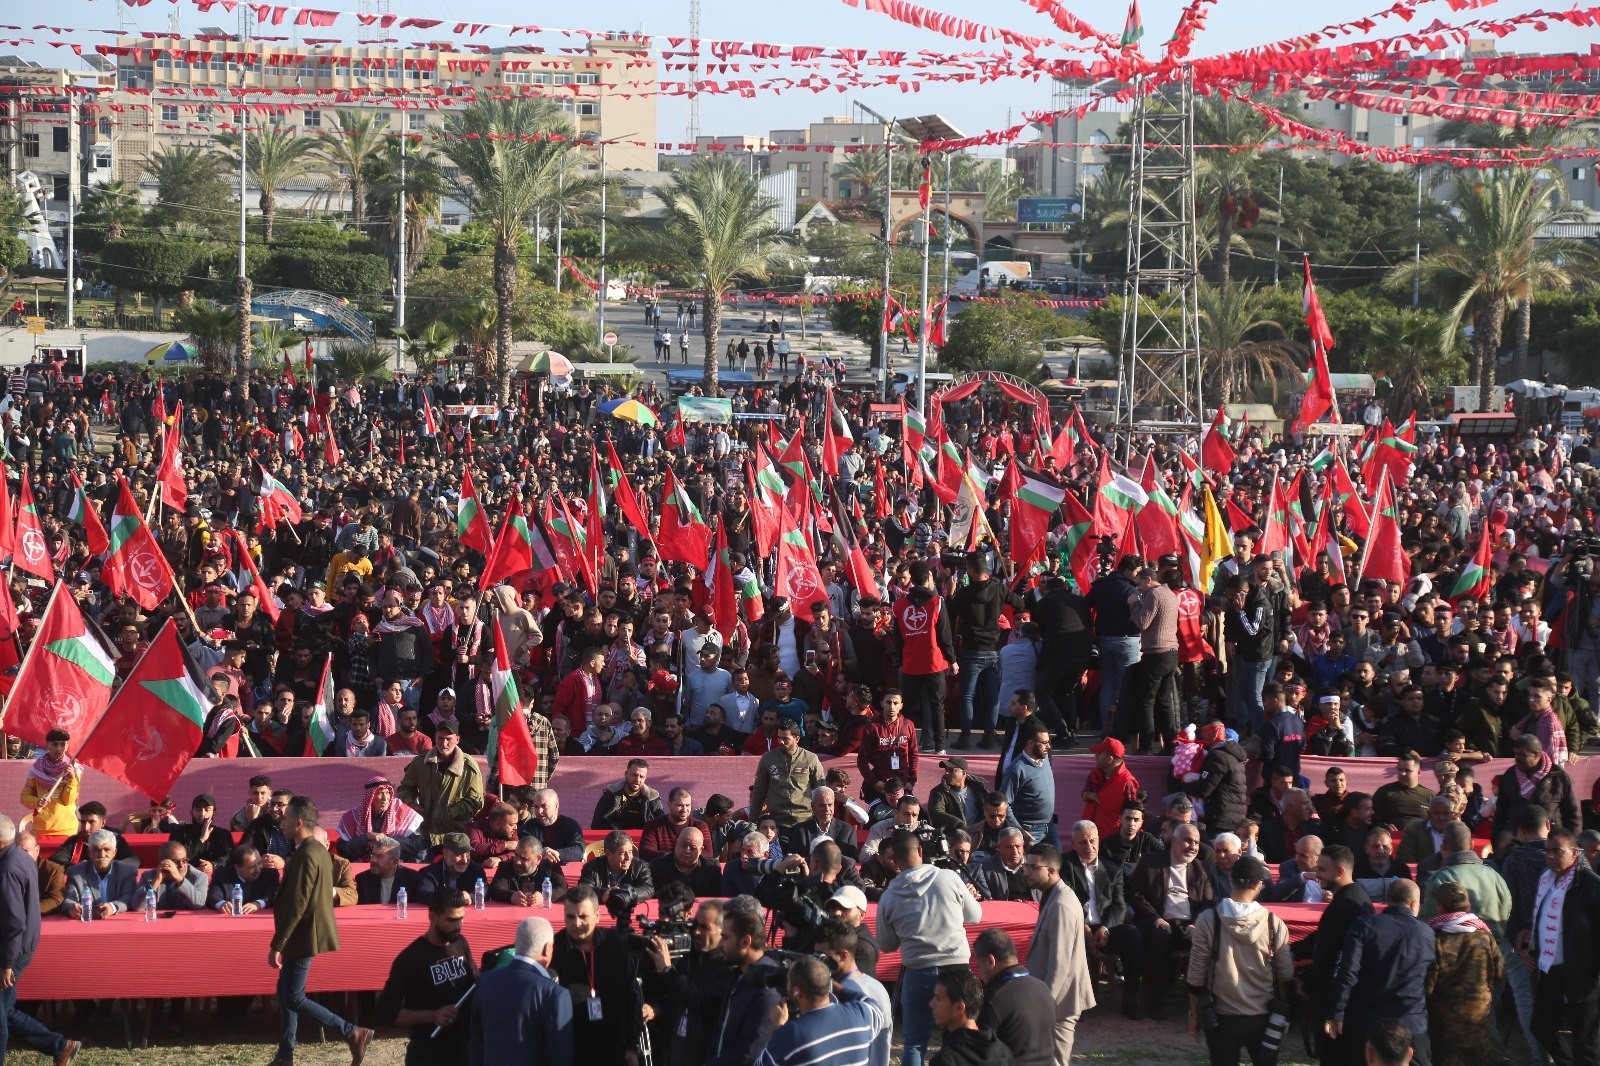 عشرات الآلاف يُشاركون في المهرجان الوطني (انطلاقتنا مقاومة) في ساحة الكتيبة بمدينة غزة لإحياء ذكرى انطلاقة الجبهة الشعبيّة لتحرير فلسطين الـ55. 44.jpg